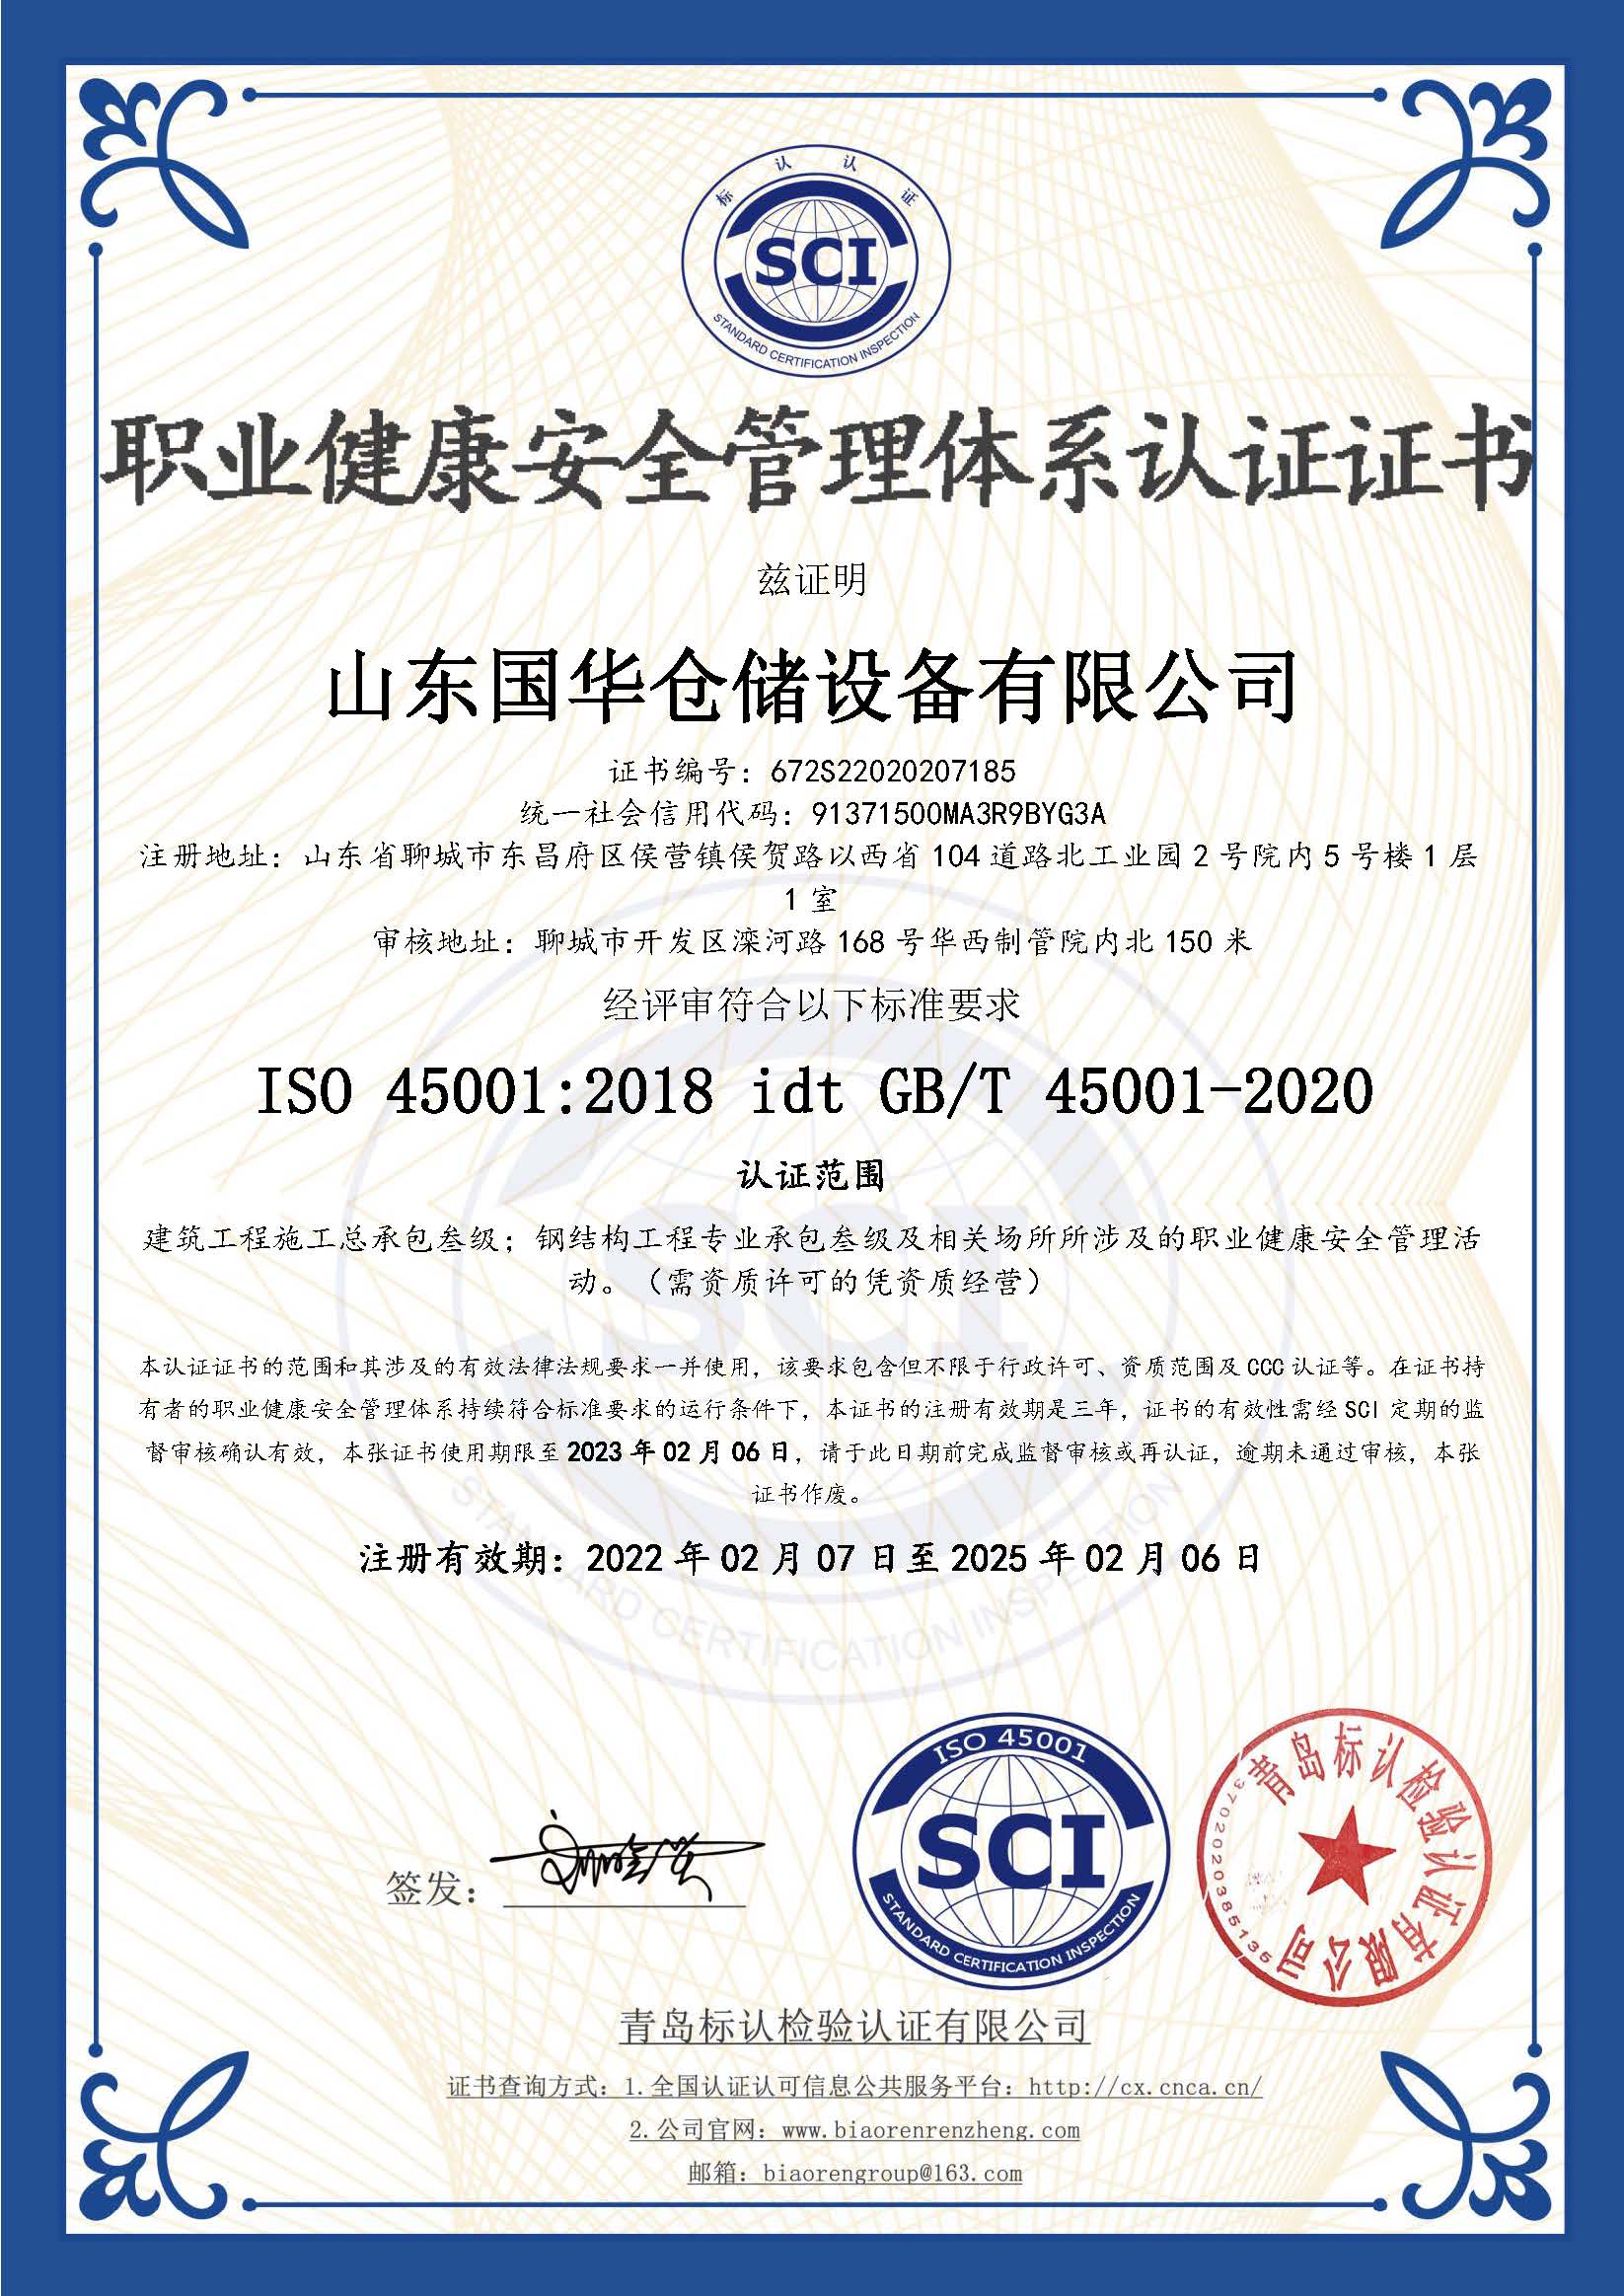 潍坊钢板仓职业健康安全管理体系认证证书